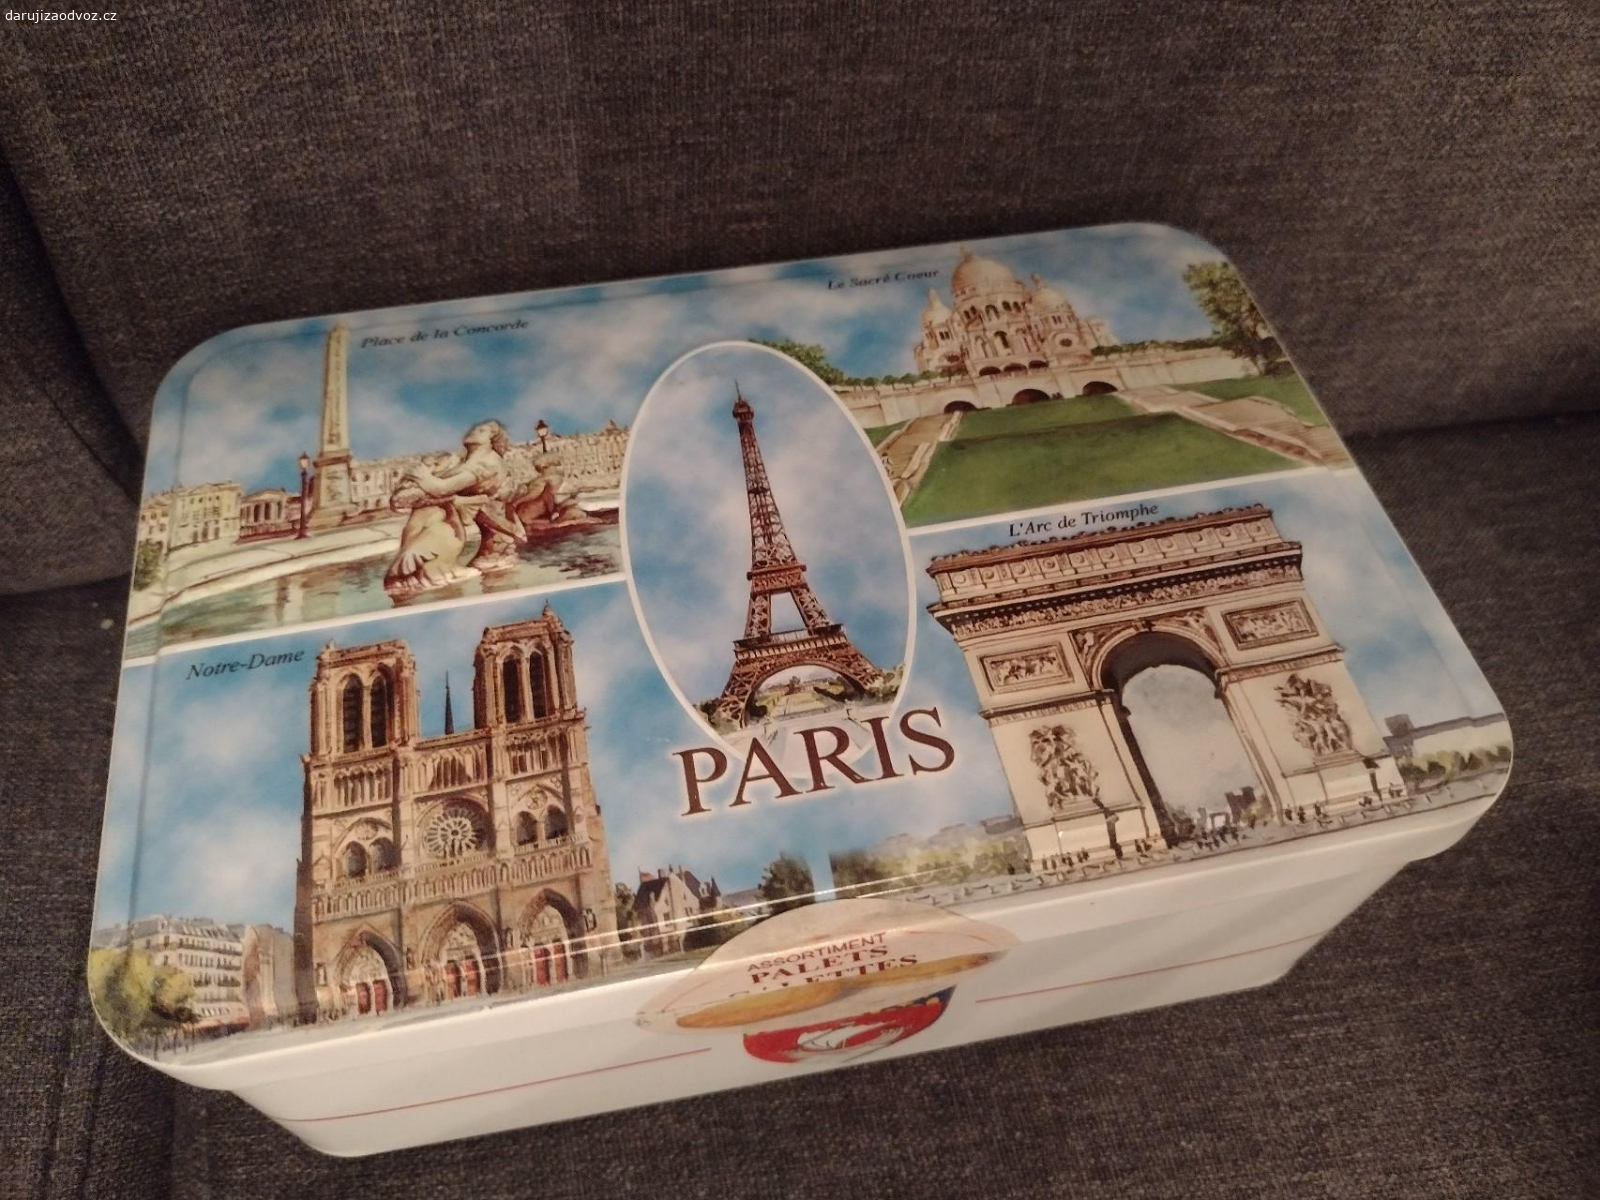 Plechová krabička Paříž. Daruji plechovou truhličku o rozměrech cca 20 x 13, v. 7 cm. Potěší ovoce či oříšky, není podmínkou.